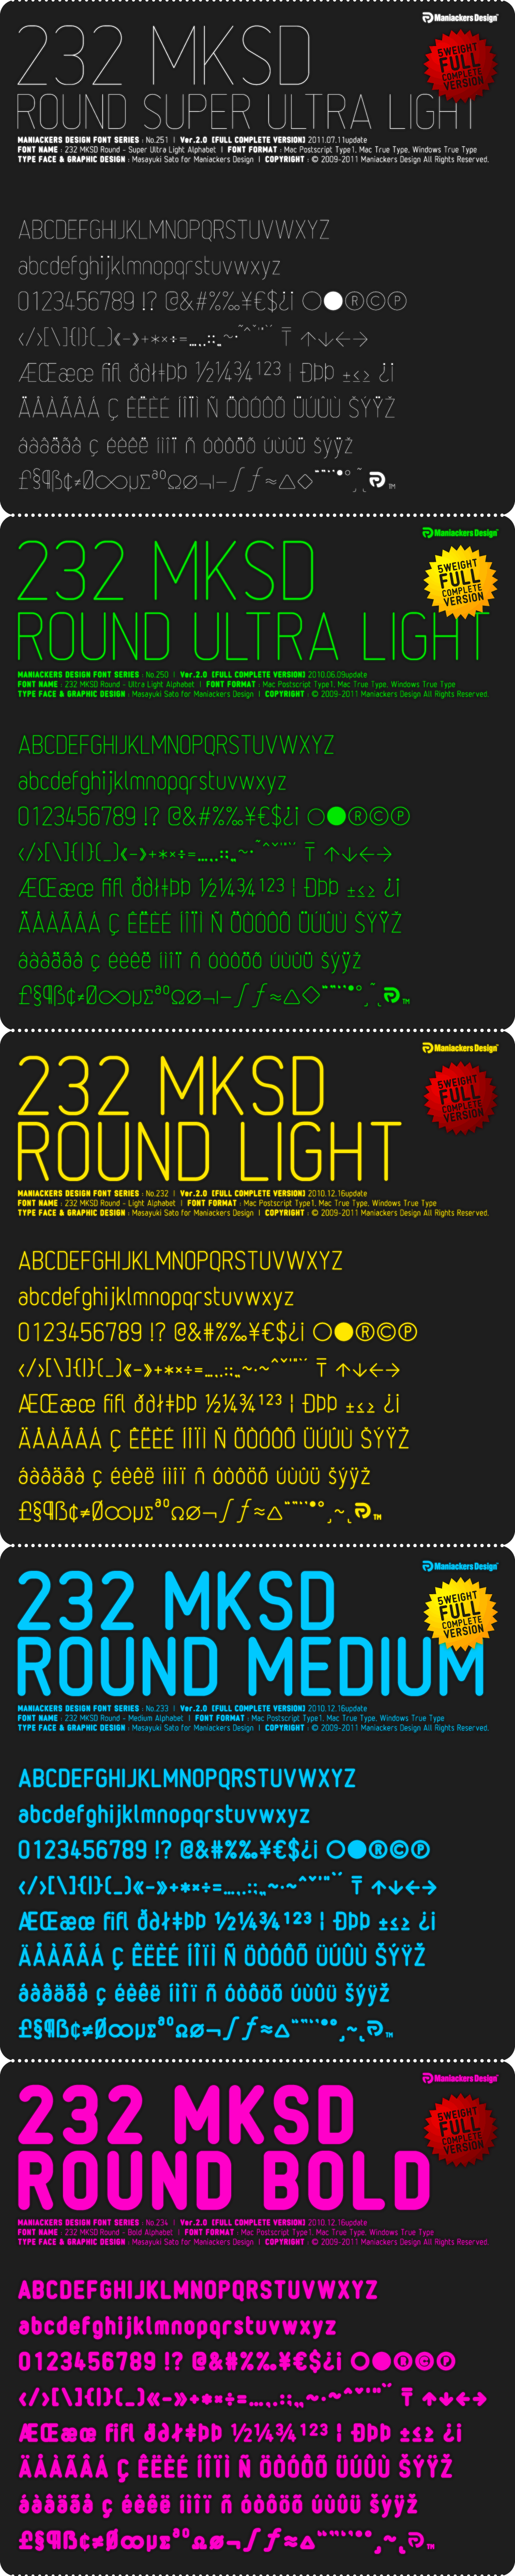 232MKSD Round - AL